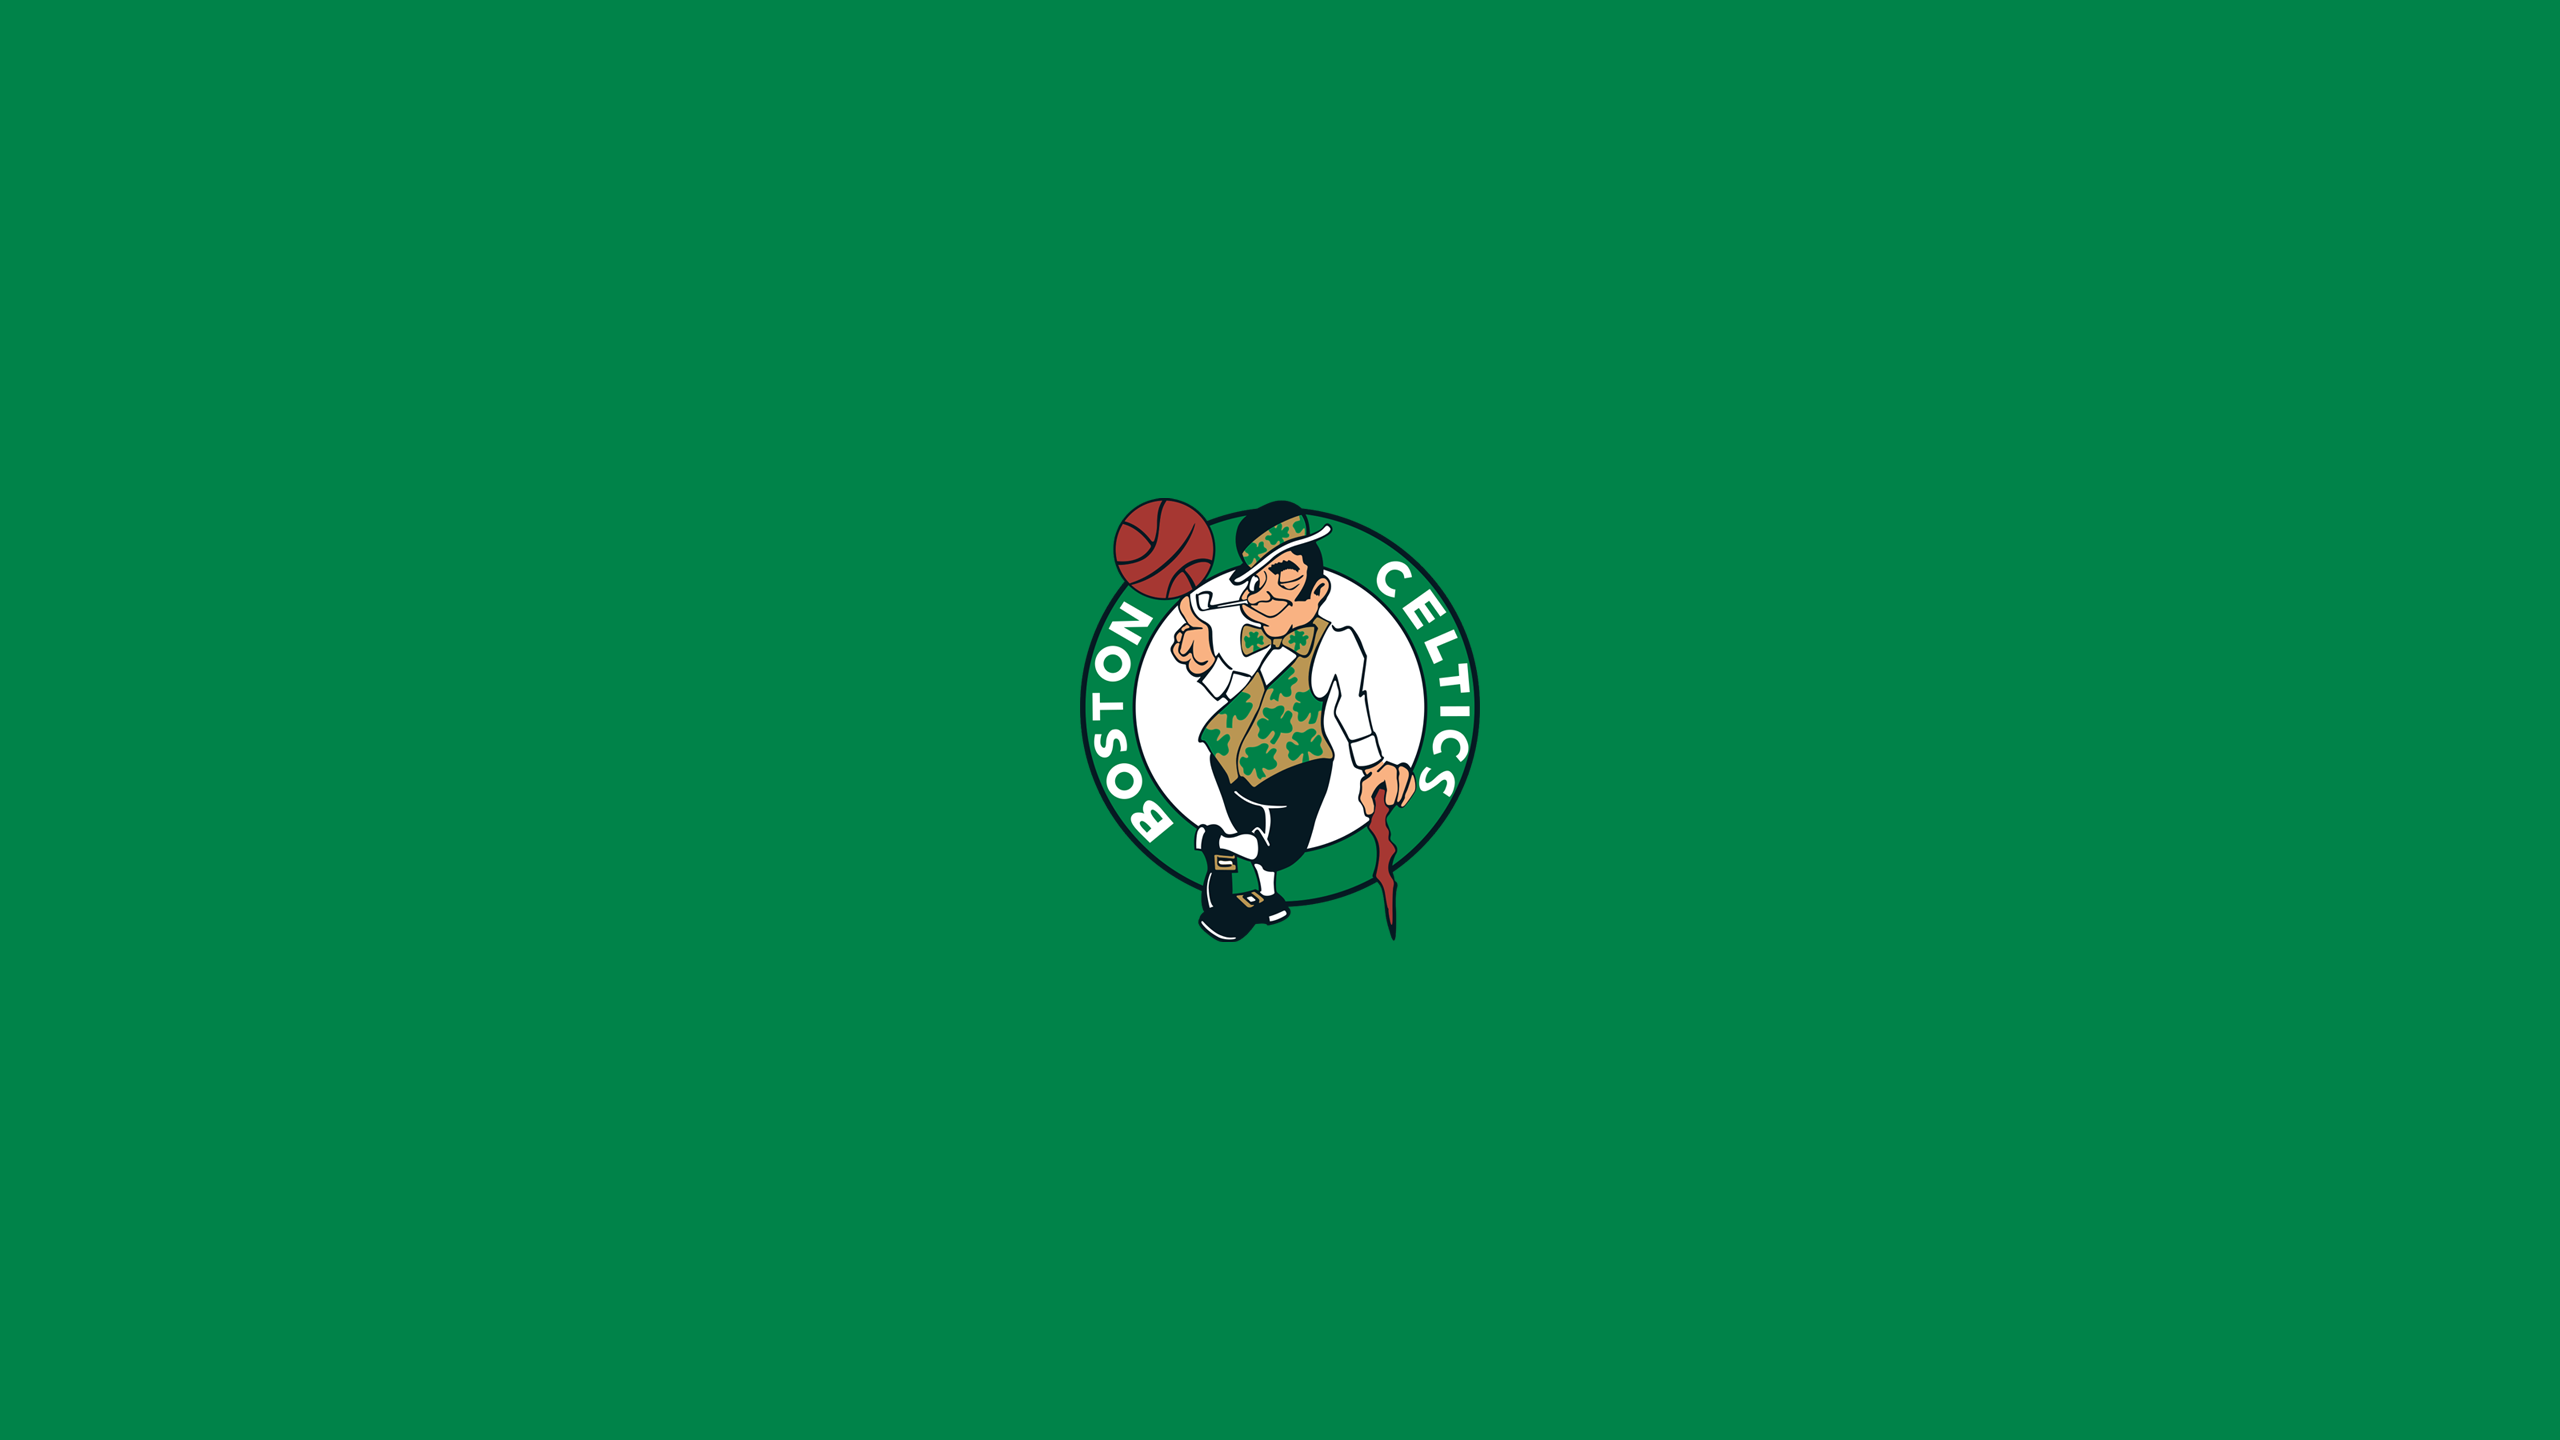 Boston Celtics - Square Bettor